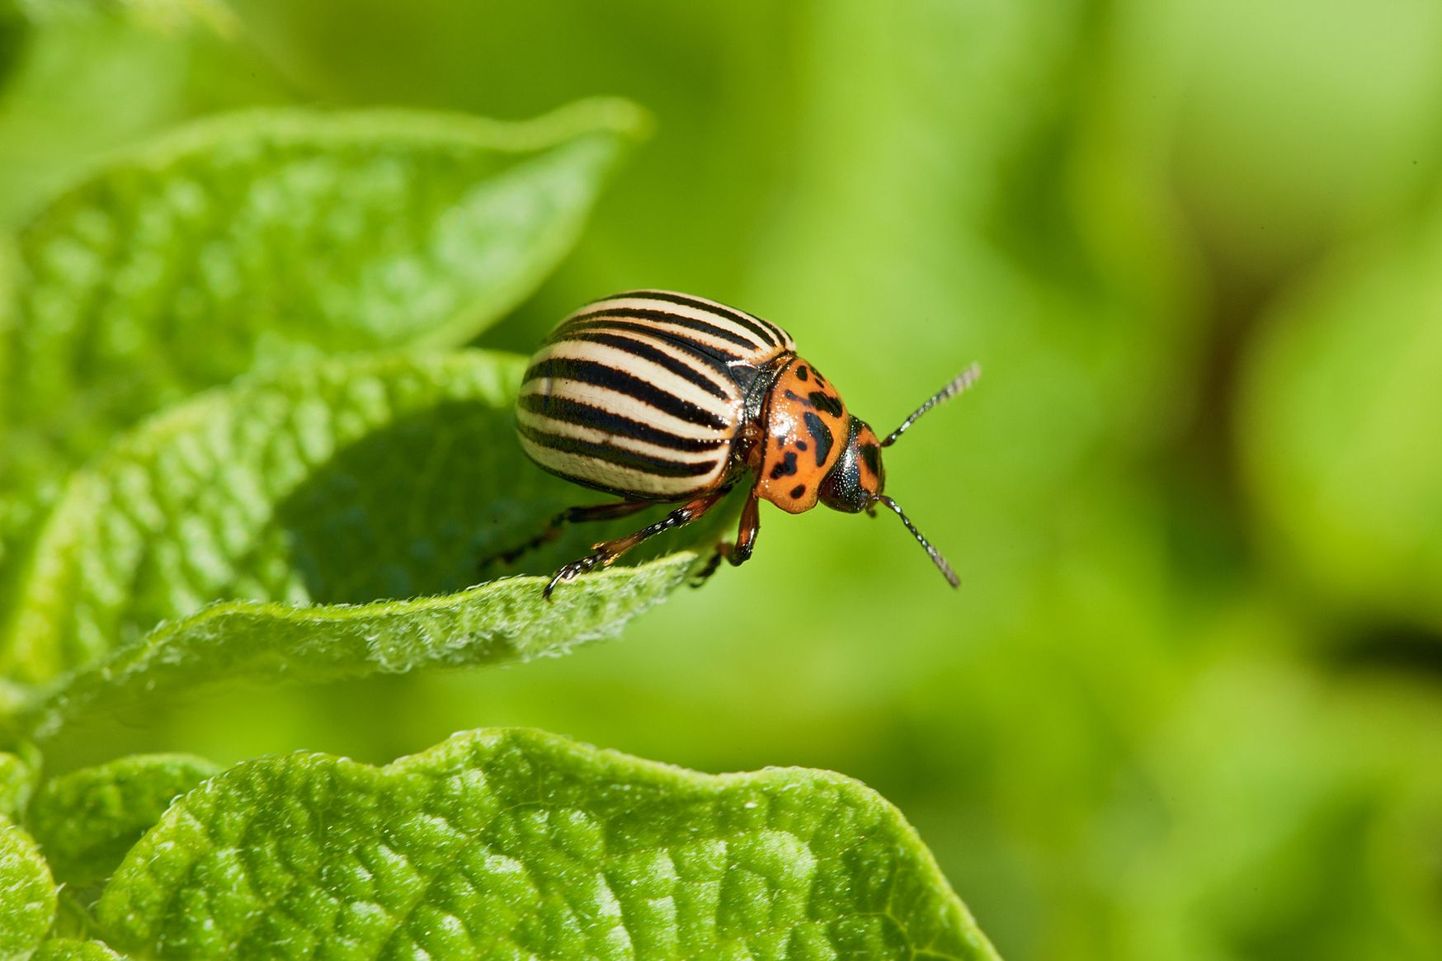 Колорадский жук быстро приспосабливается к самым разным факторам внешней среды, и избавиться от него очень трудно.